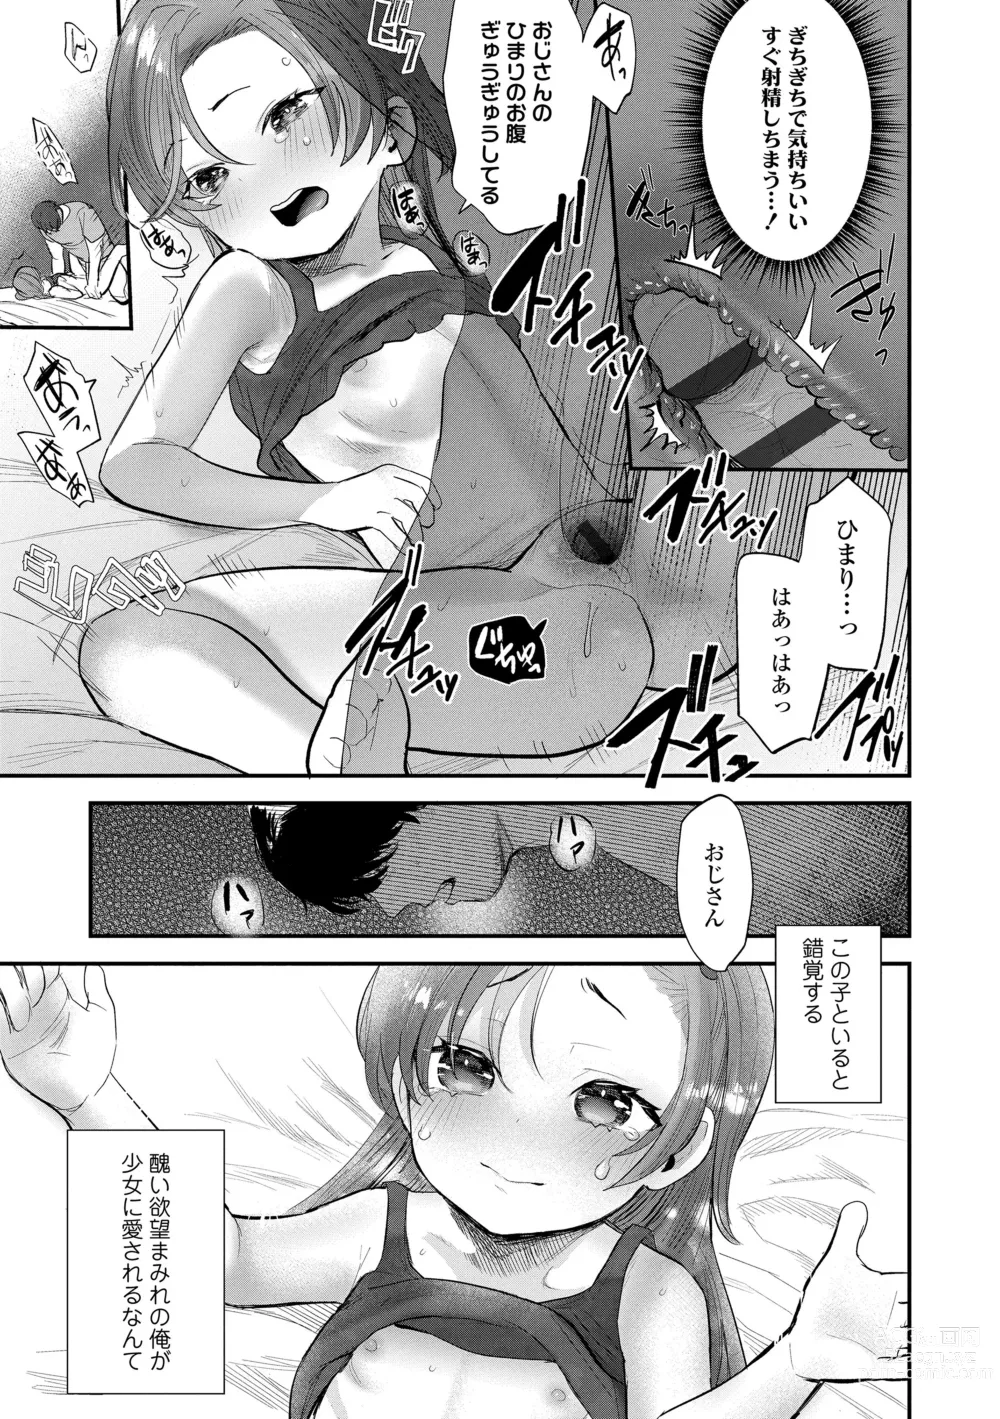 Page 13 of manga Chisanakonokoi